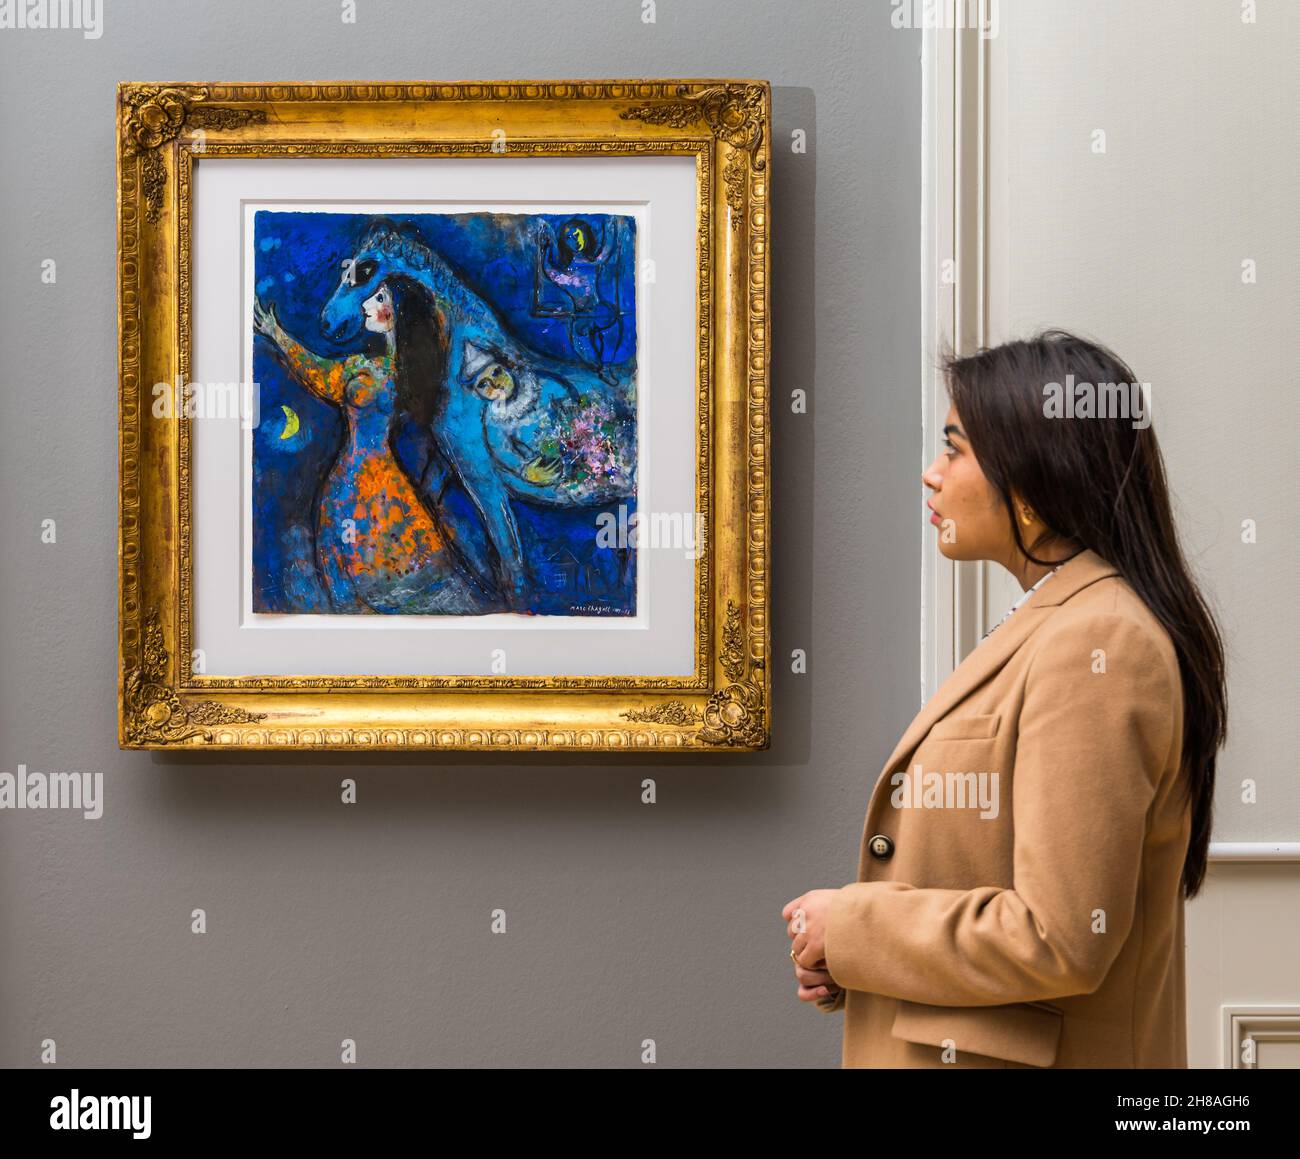 Mujer admirando la pintura del artista francés Marc Chagall llamó a la Galería Nacional Escocesa de Arte Moderno Horse Rider, Edimburgo, Escocia, Reino Unido Foto de stock